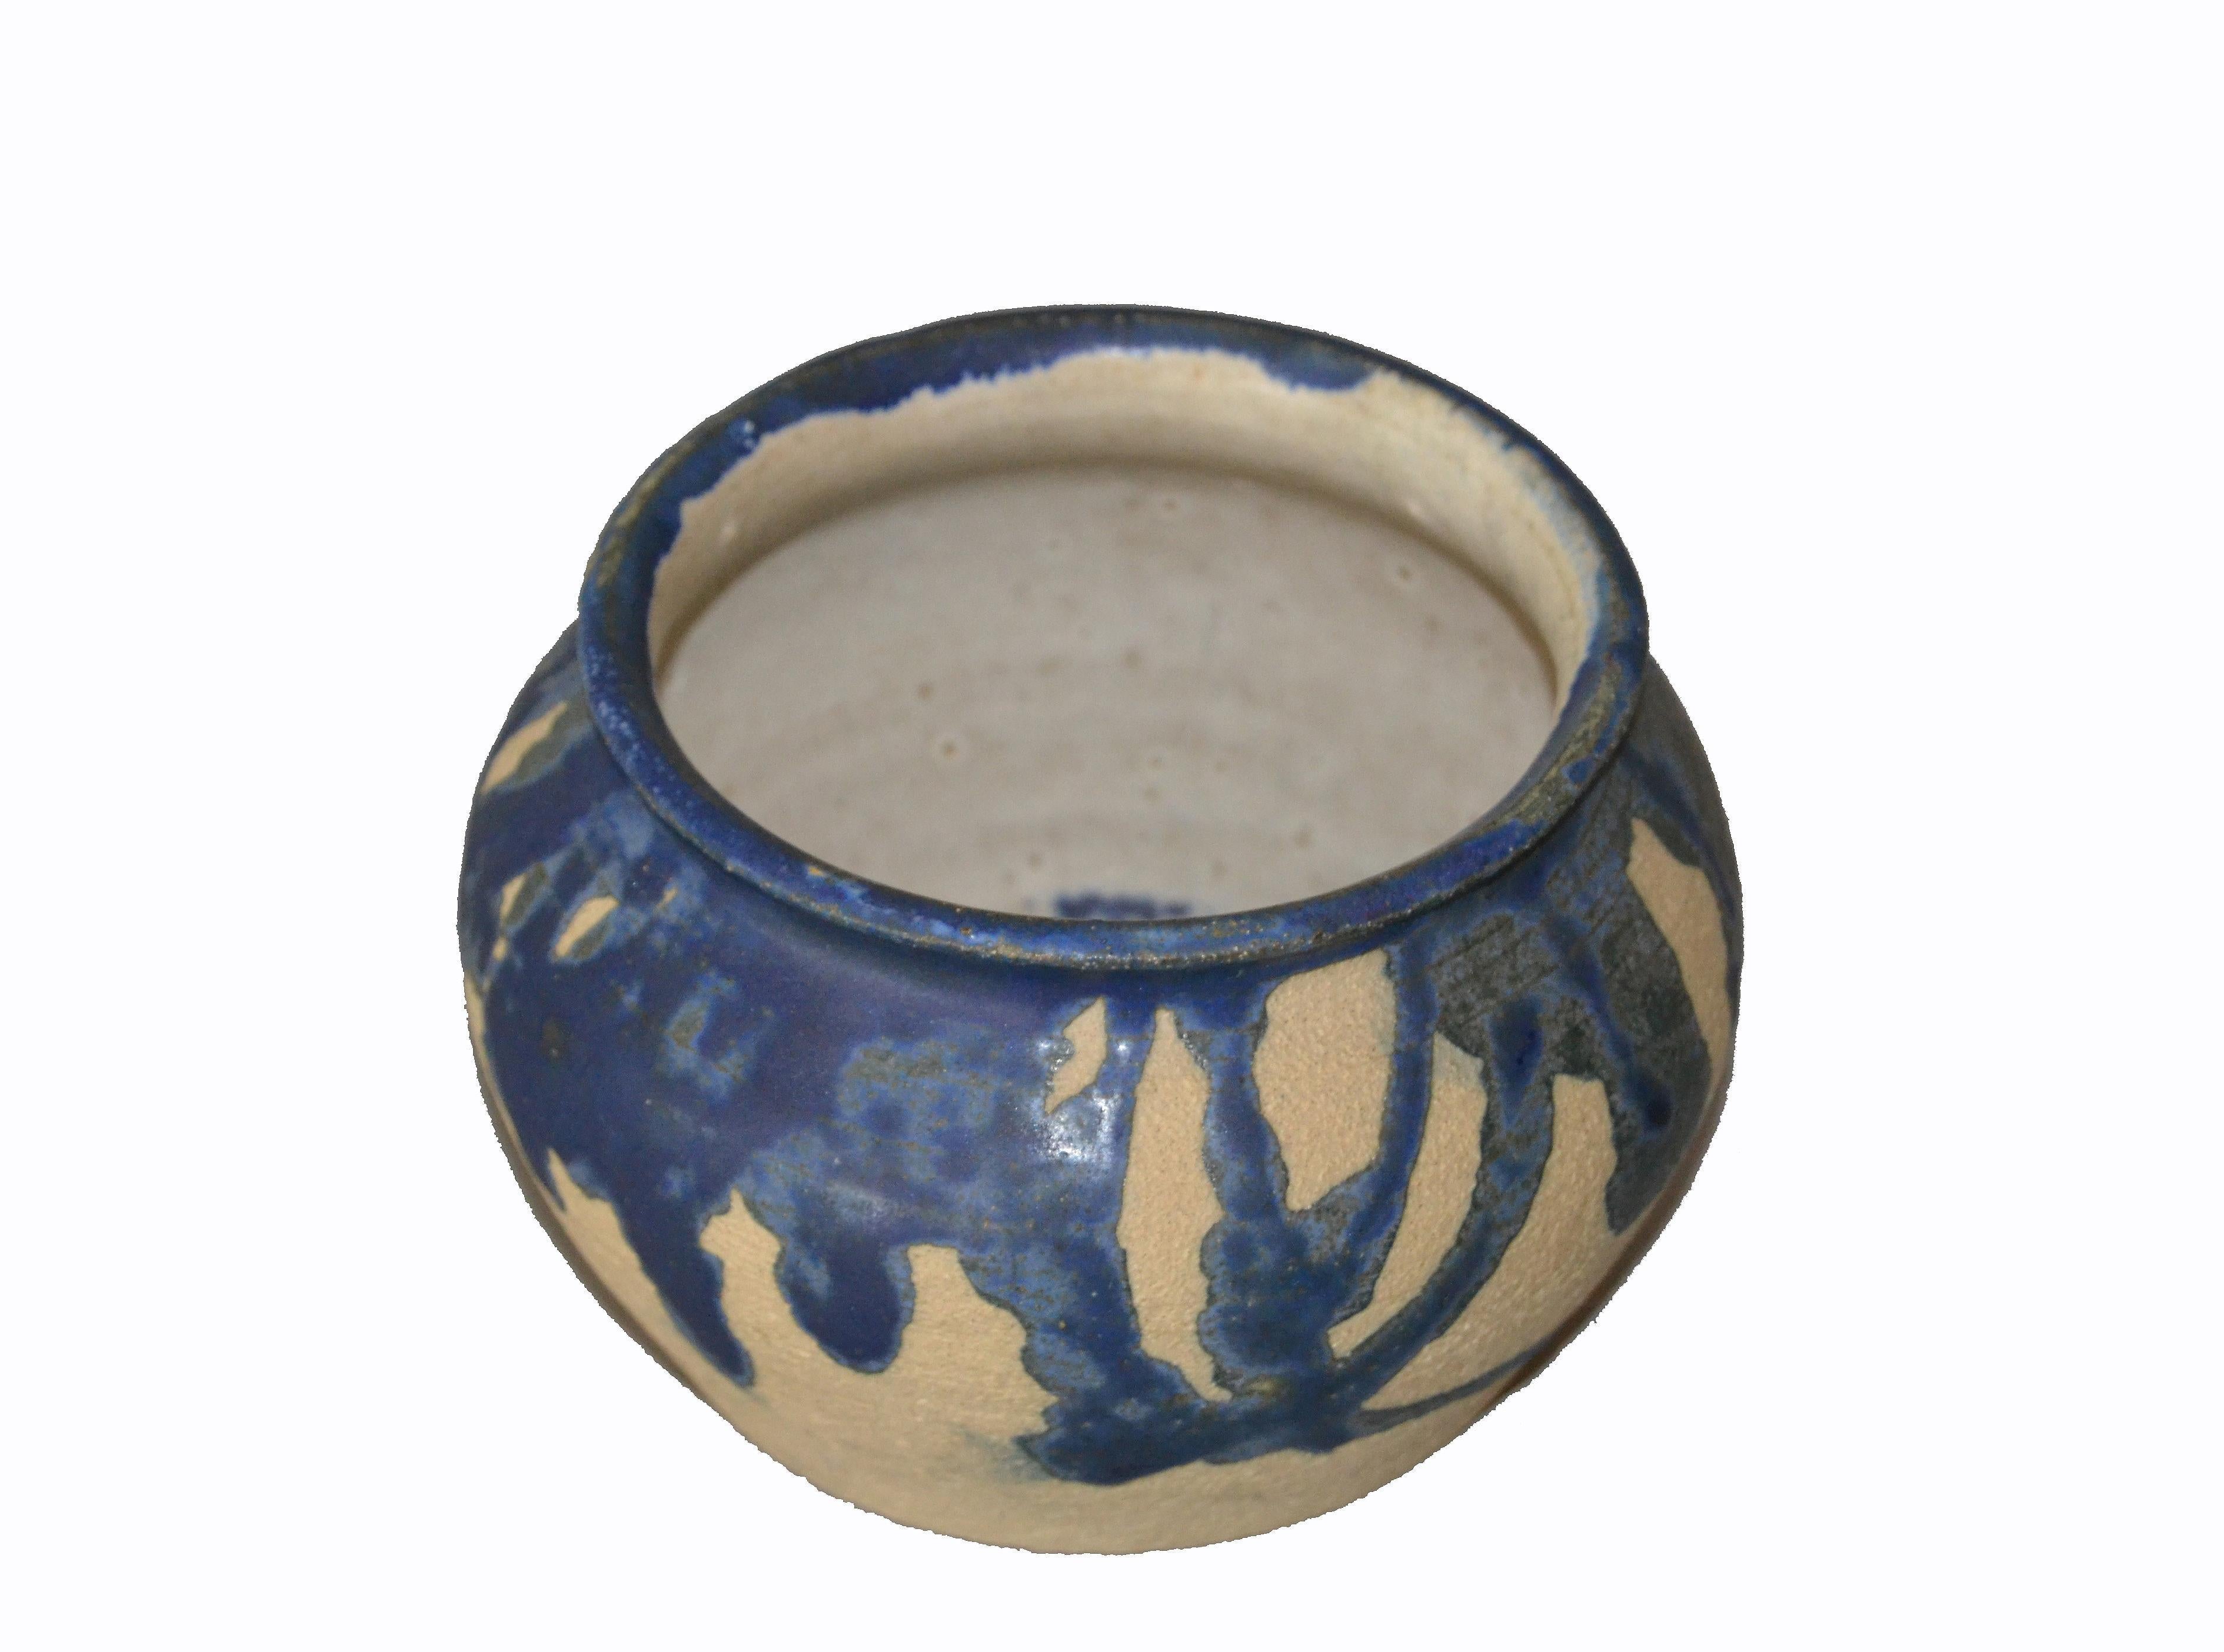 Glazed Eli Hanemann Vintage Drip Glaze Blue & Beige Pottery Ceramic Bowl Studio Piece